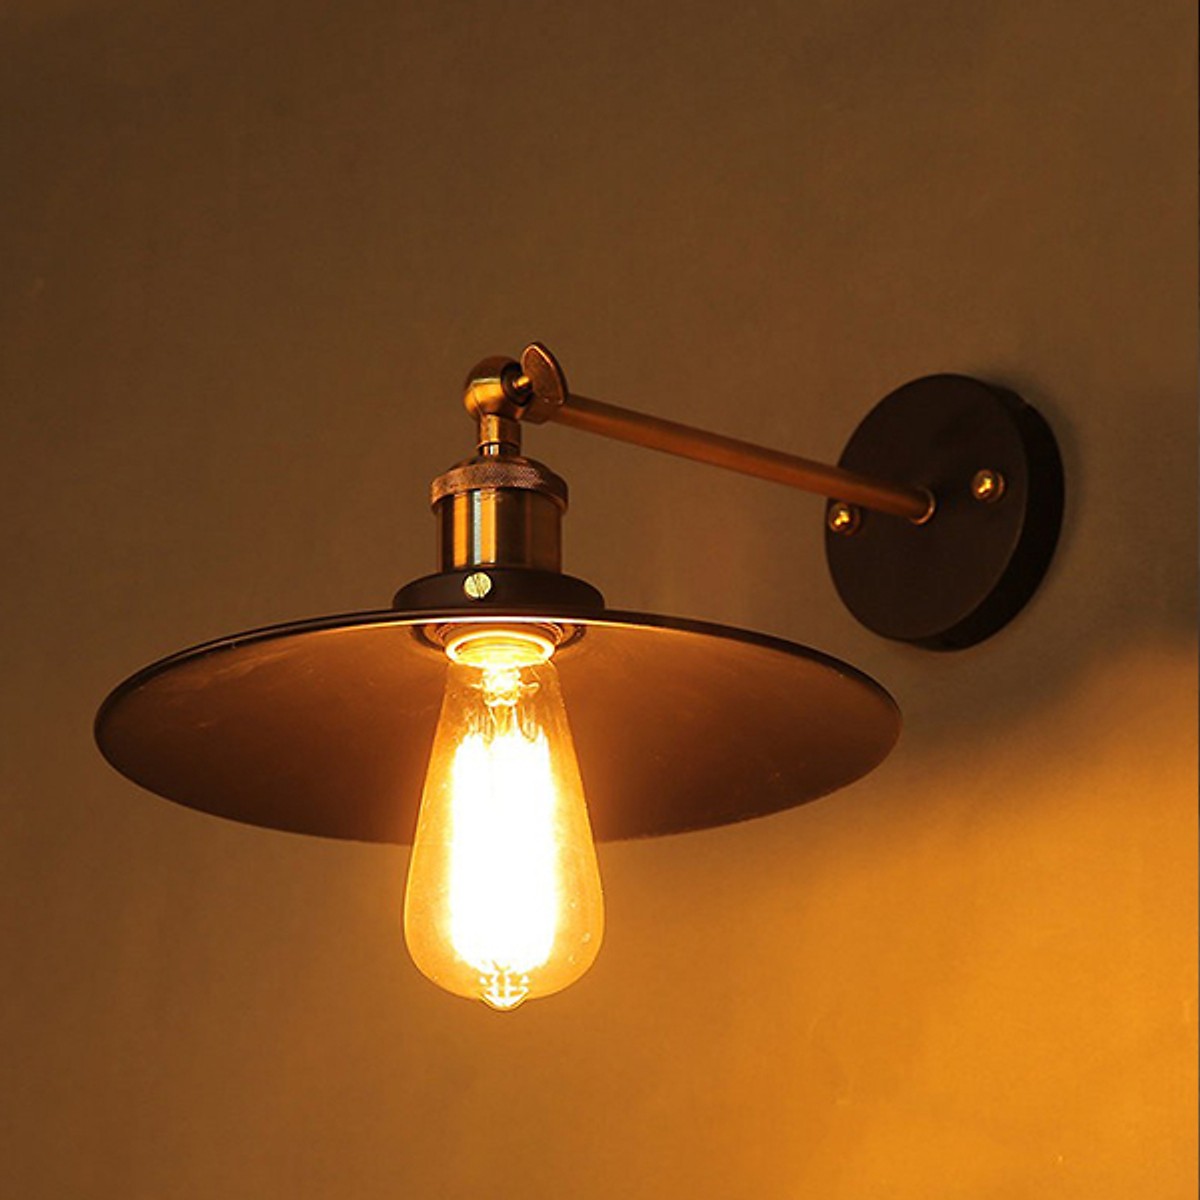 Đèn gắn tường 1 đui Chao sắt TU002T NATURAL LAMP